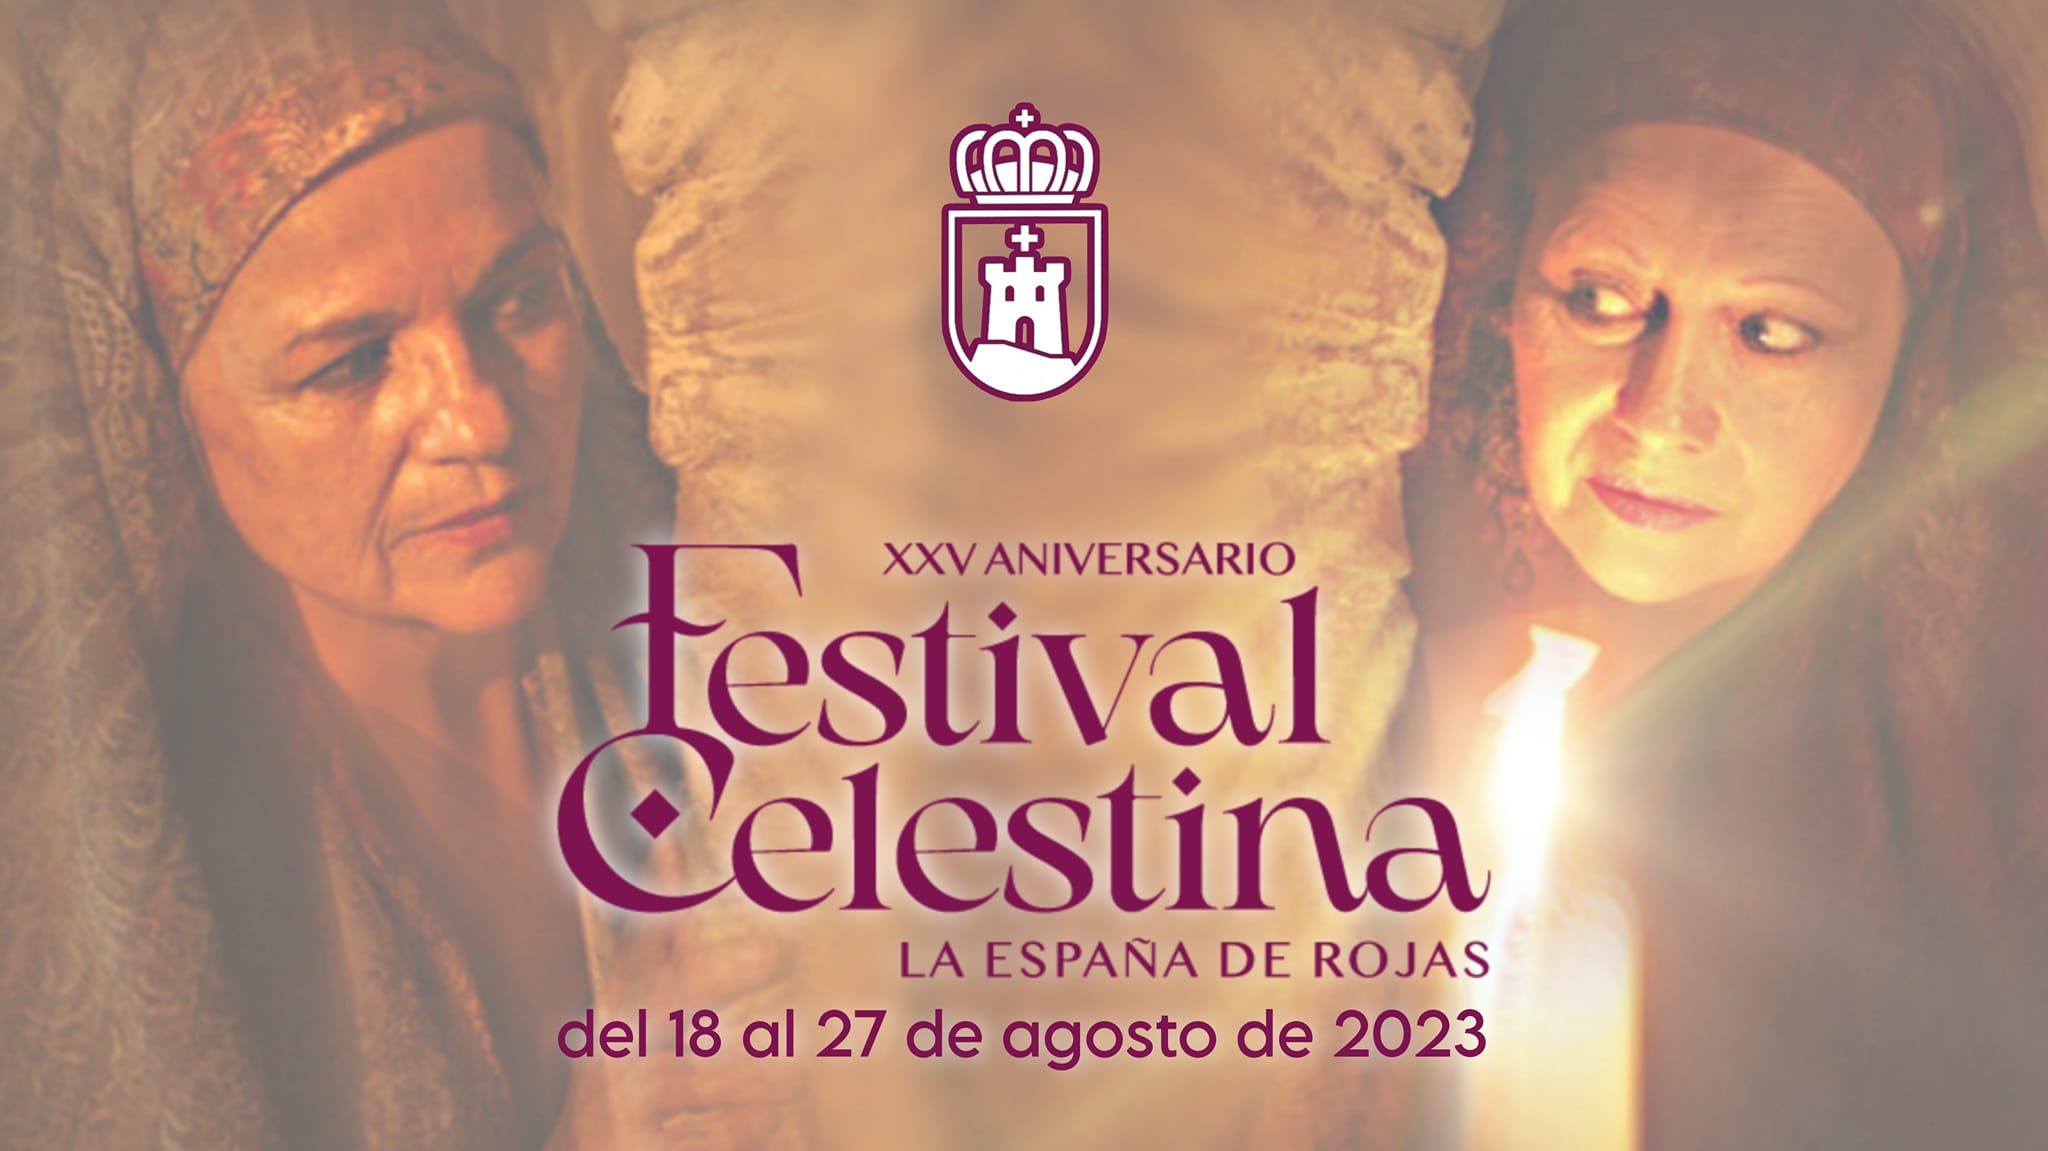 (c) Festivalcelestina.com